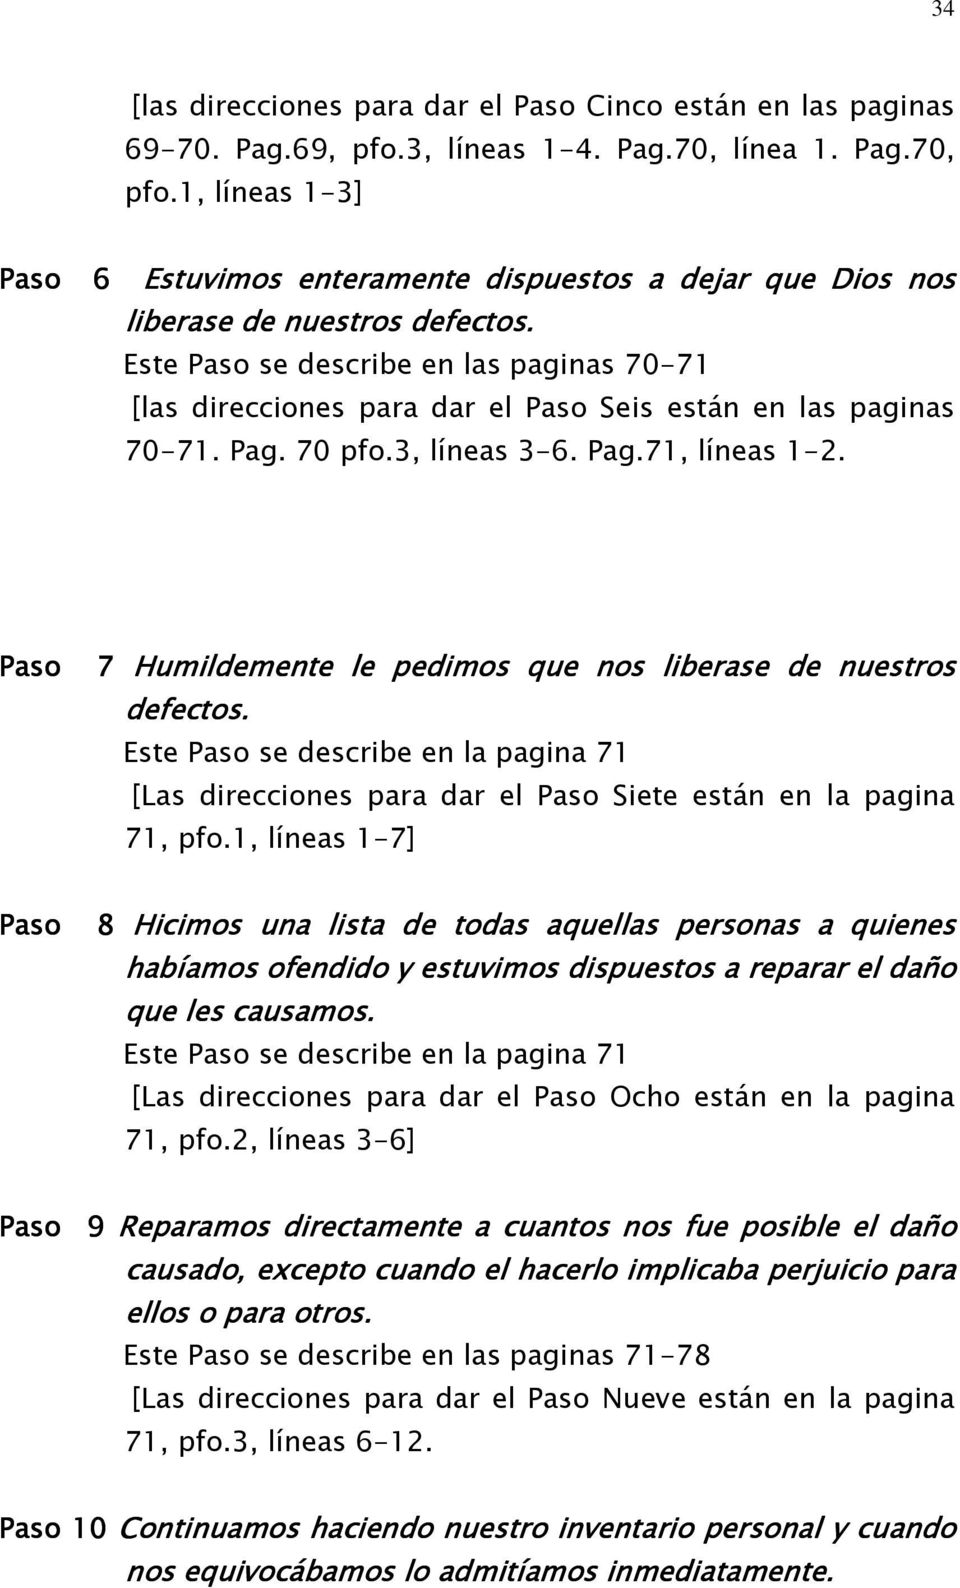 Este Paso se describe en las paginas 70-71 [las direcciones para dar el Paso Seis están en las paginas 70-71. Pag. 70 pfo.3, líneas 3-6. Pag.71, líneas 1-2.